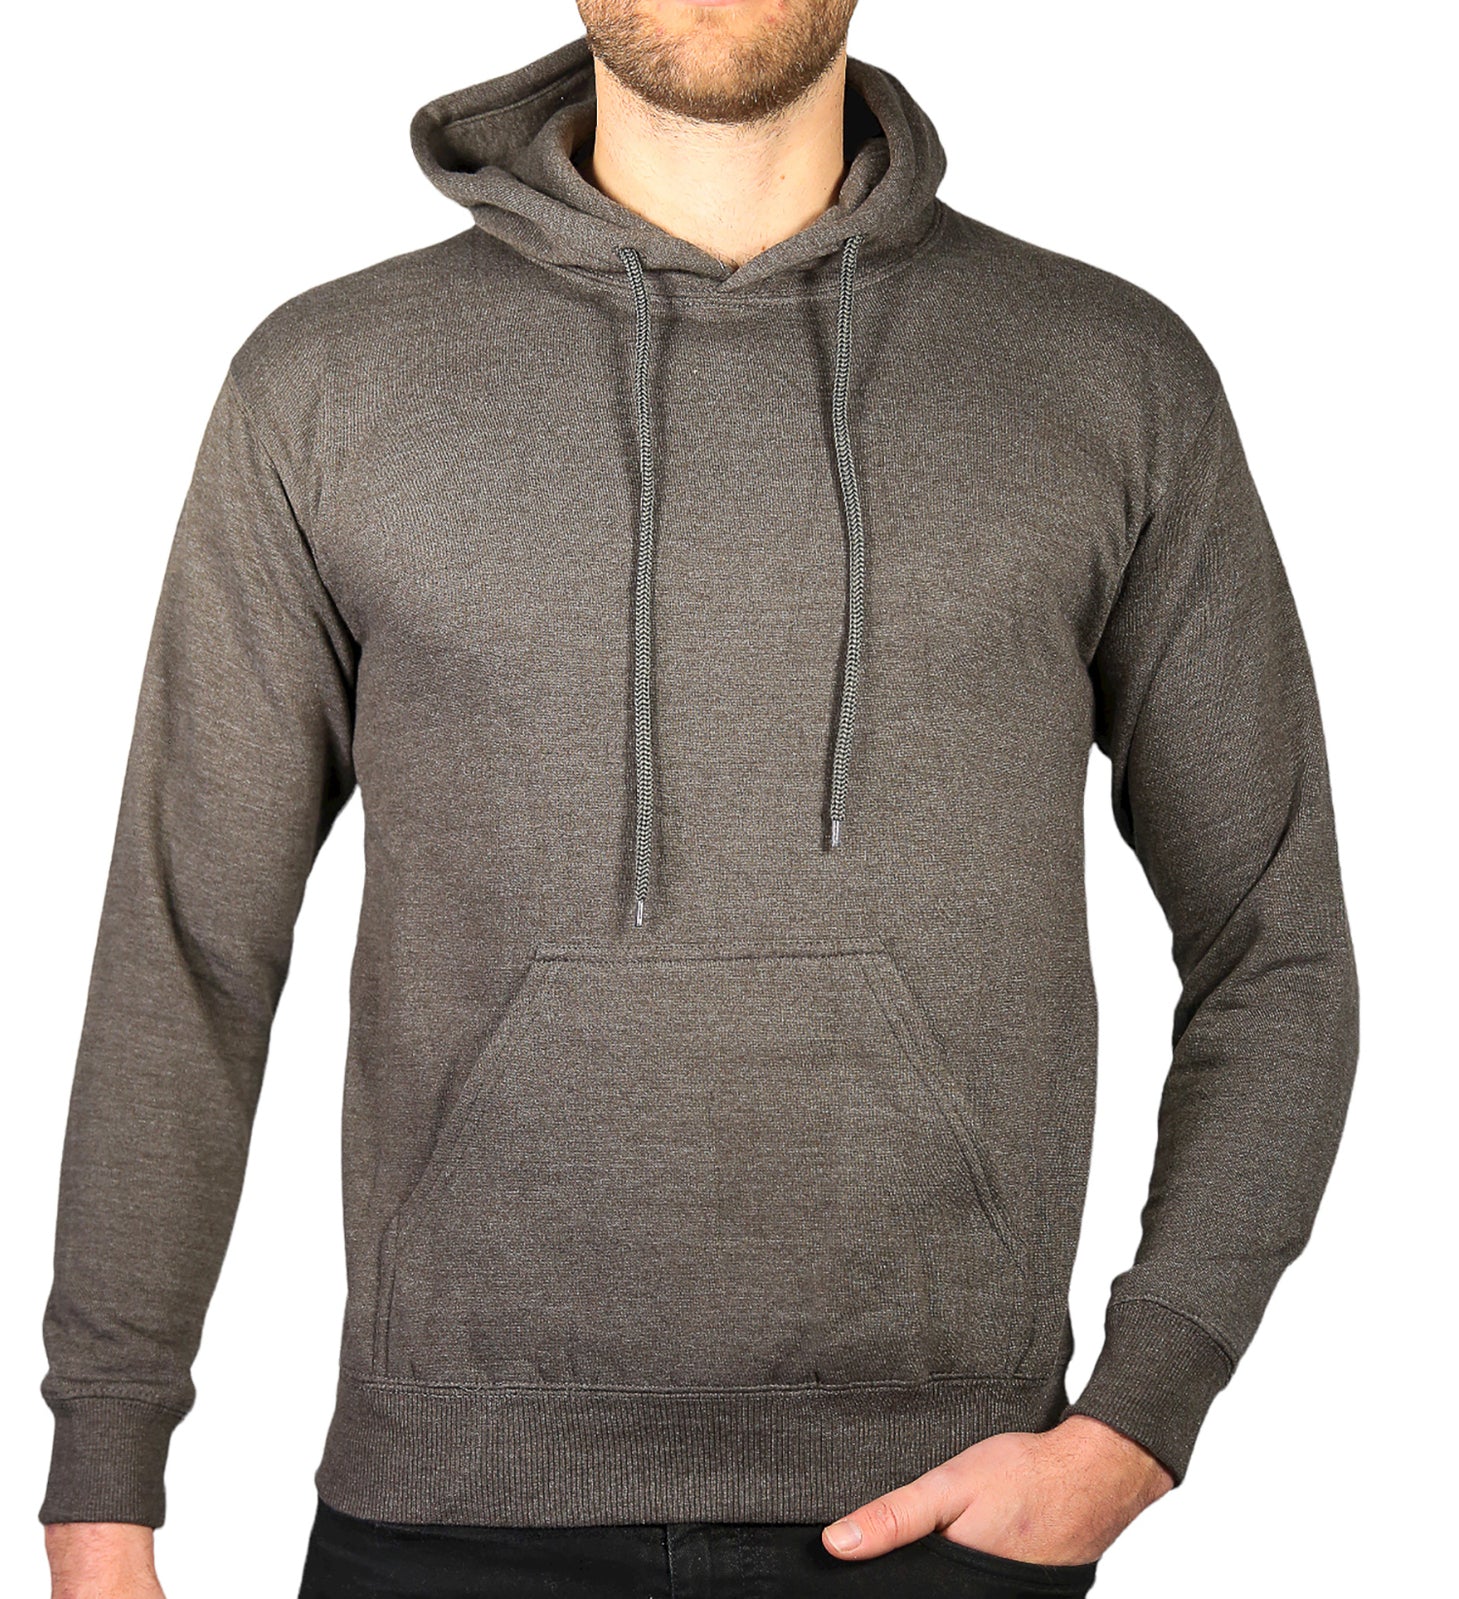 Adult Mens 100% Cotton Fleece Hoodie Jumper Pullover Sweater Warm Sweatshirt - Charcoal Grey - S